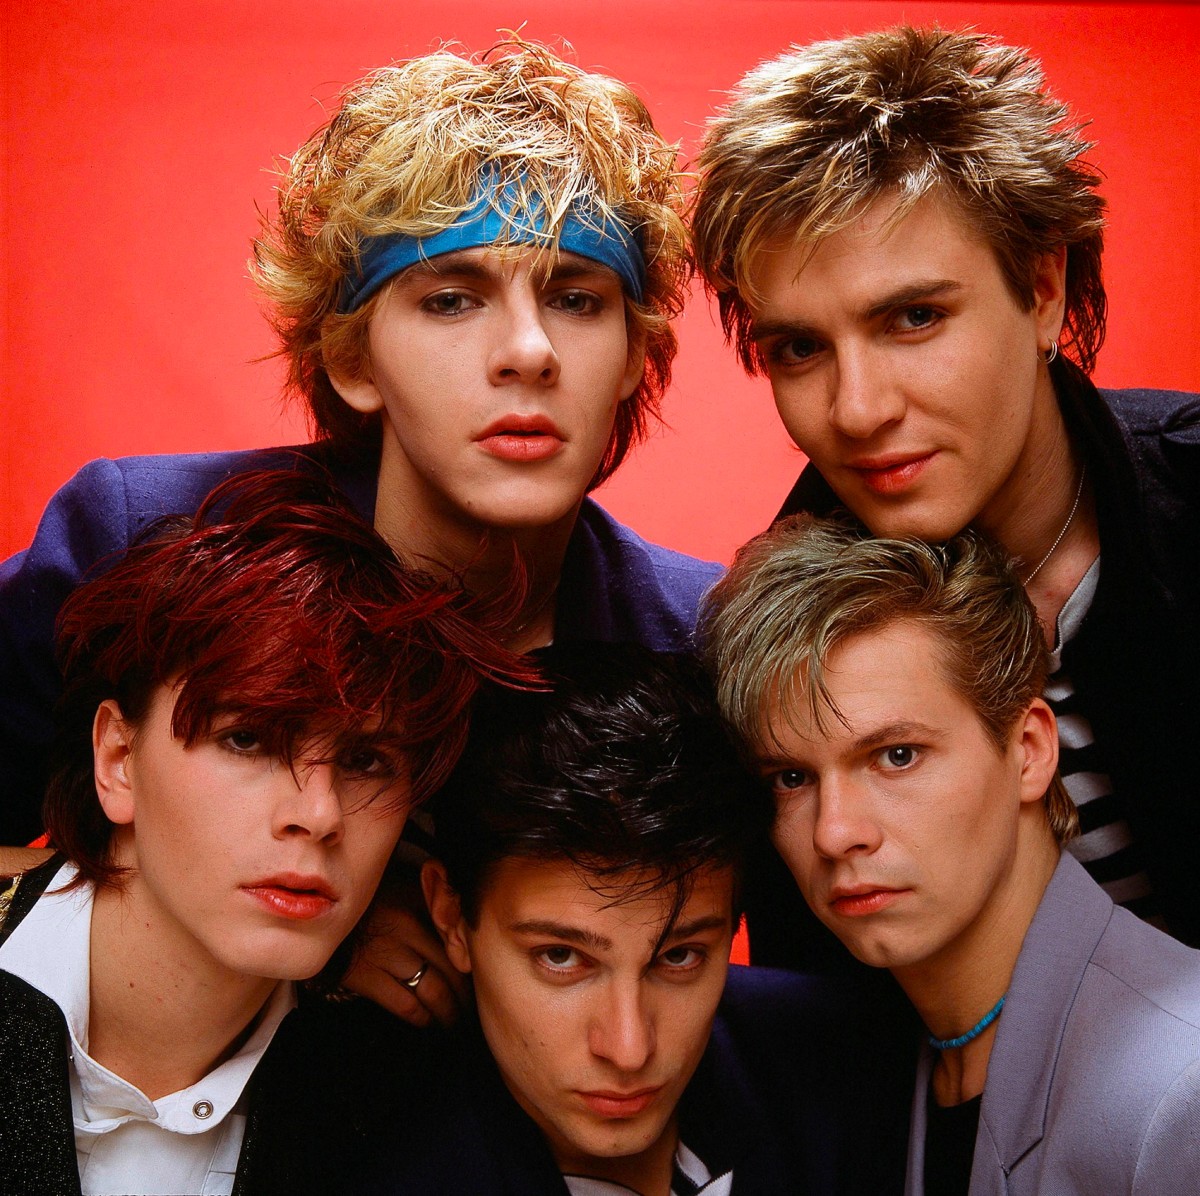 Duran Duran at a photo shoot